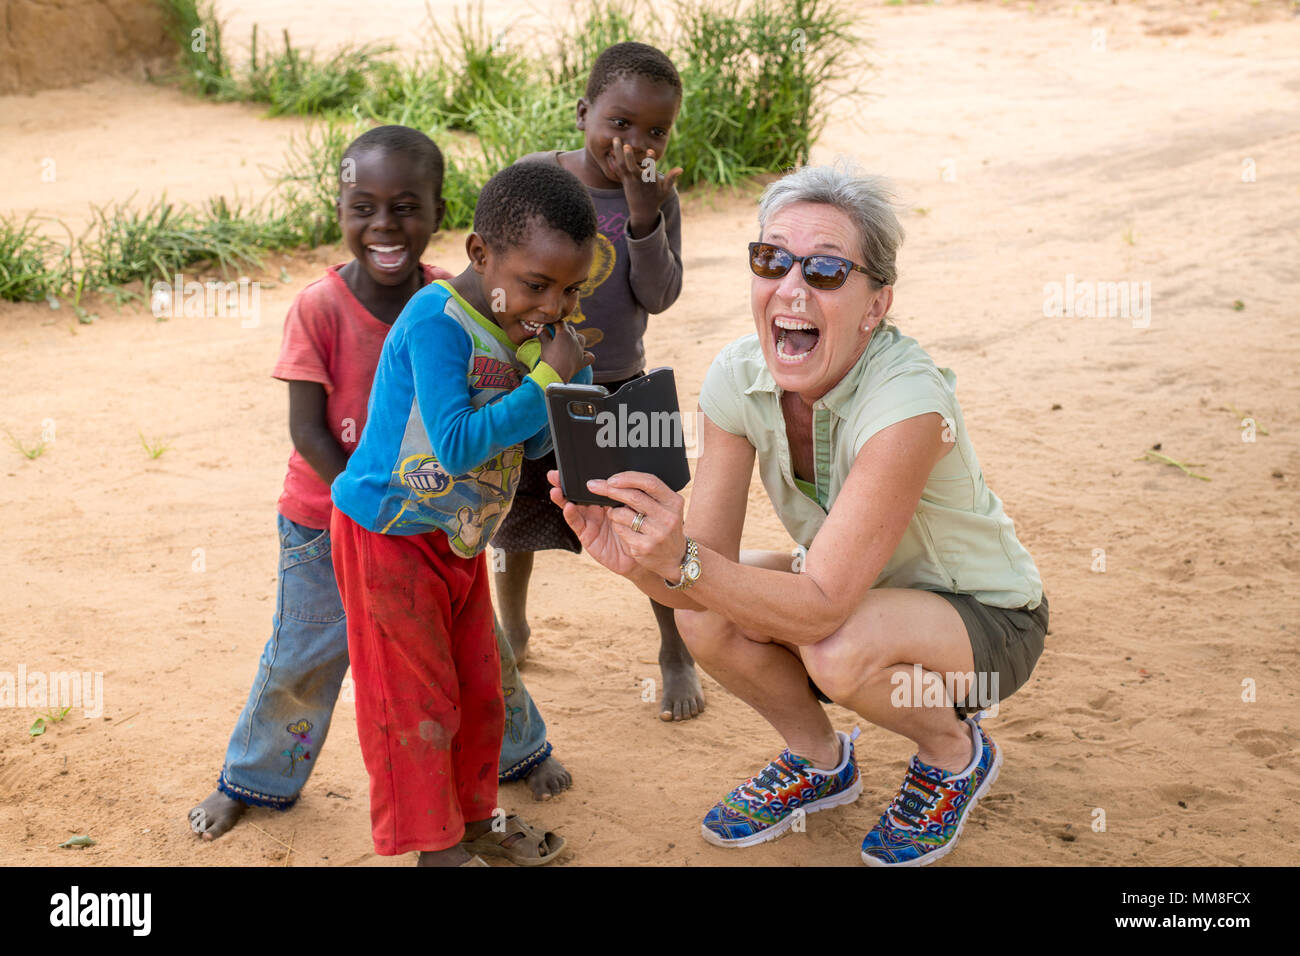 Une femme avec excitation partage quelque chose sur son téléphone avec un groupe de jeunes garçons. Livingstone, Zambie Banque D'Images